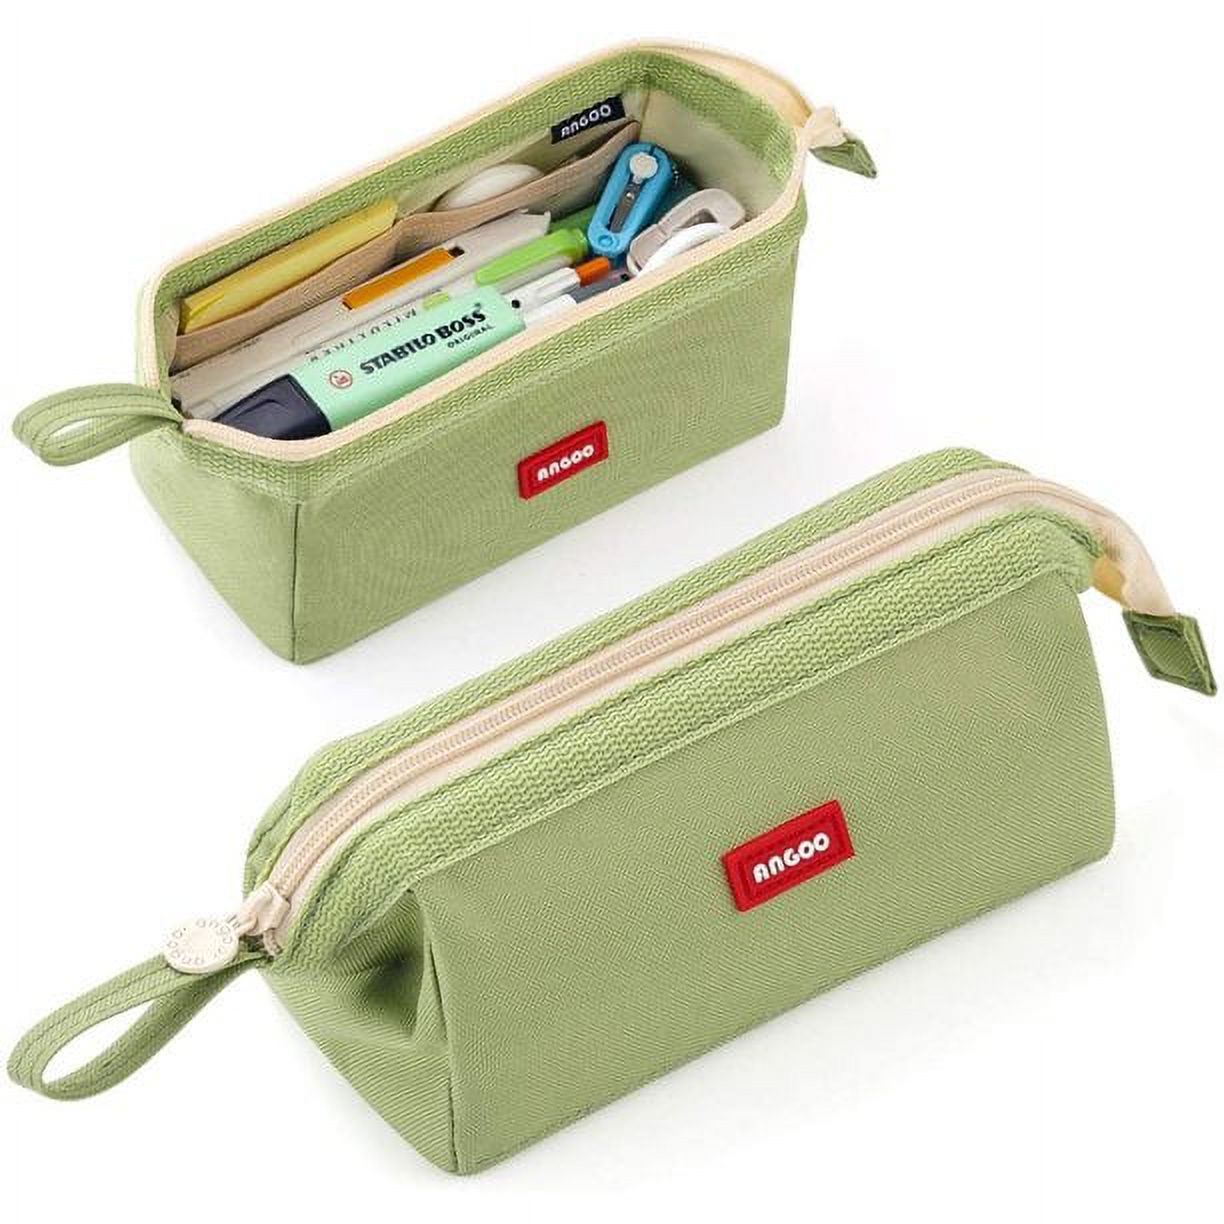 Cicimelon Pencil Case Large Capacity Pencil Pouch Pen Bag for School Teen Girl Boy Men Women (Green)